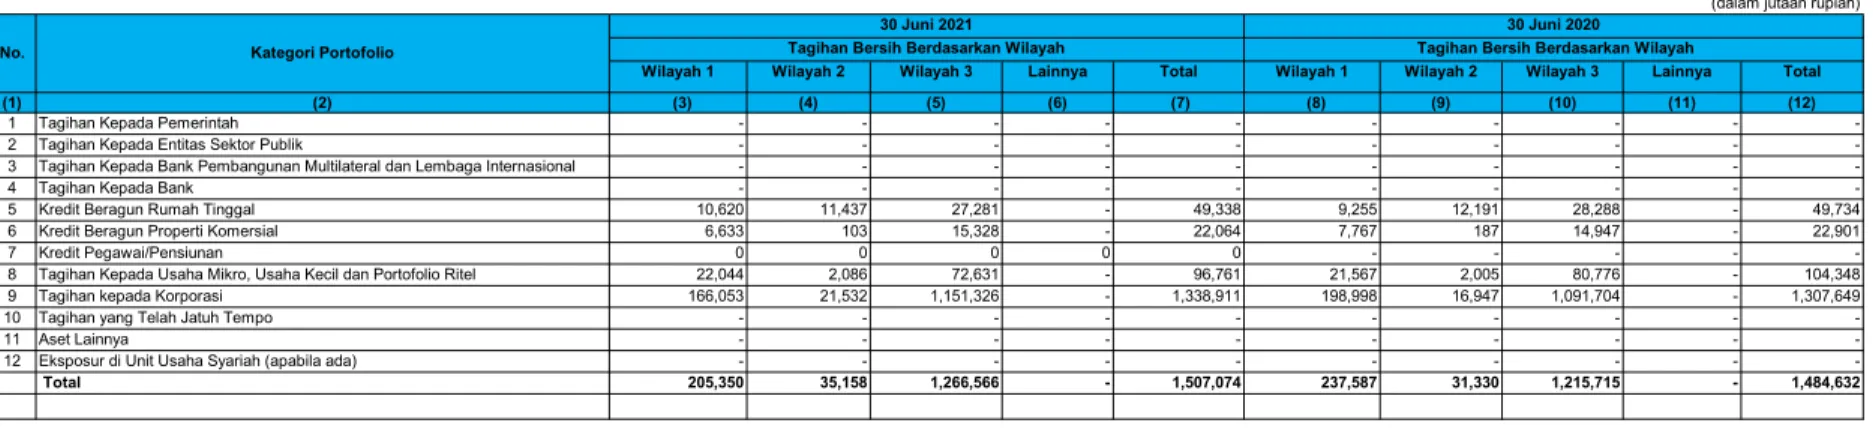 Tabel 2.1 Pengungkapan Tagihan Bersih Berdasarkan Wilayah - Bank secara Individual